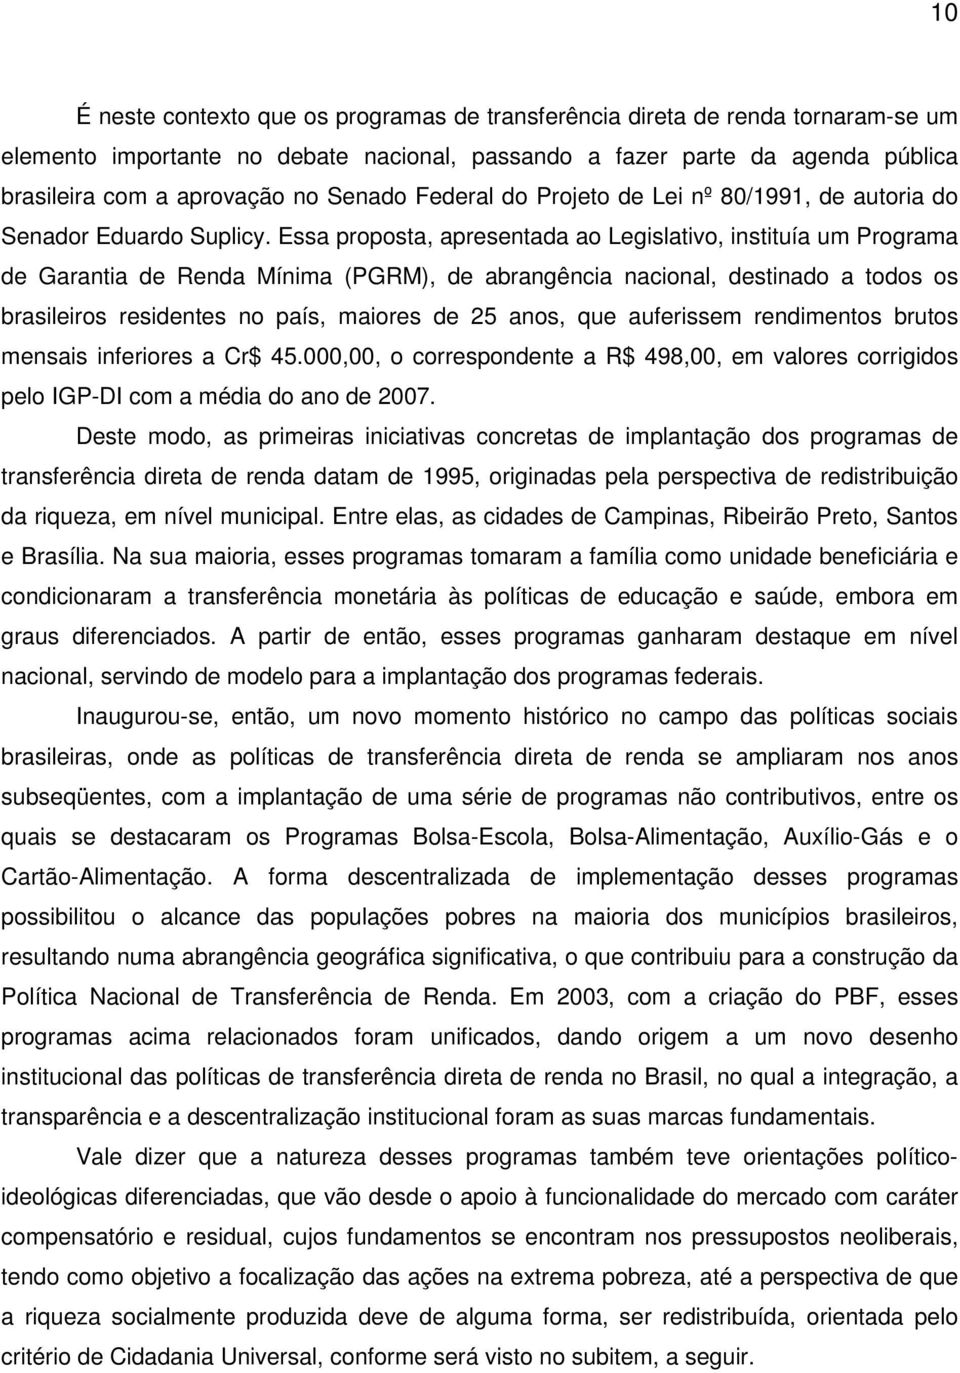 Essa proposta, apresentada ao Legislativo, instituía um Programa de Garantia de Renda Mínima (PGRM), de abrangência nacional, destinado a todos os brasileiros residentes no país, maiores de 25 anos,